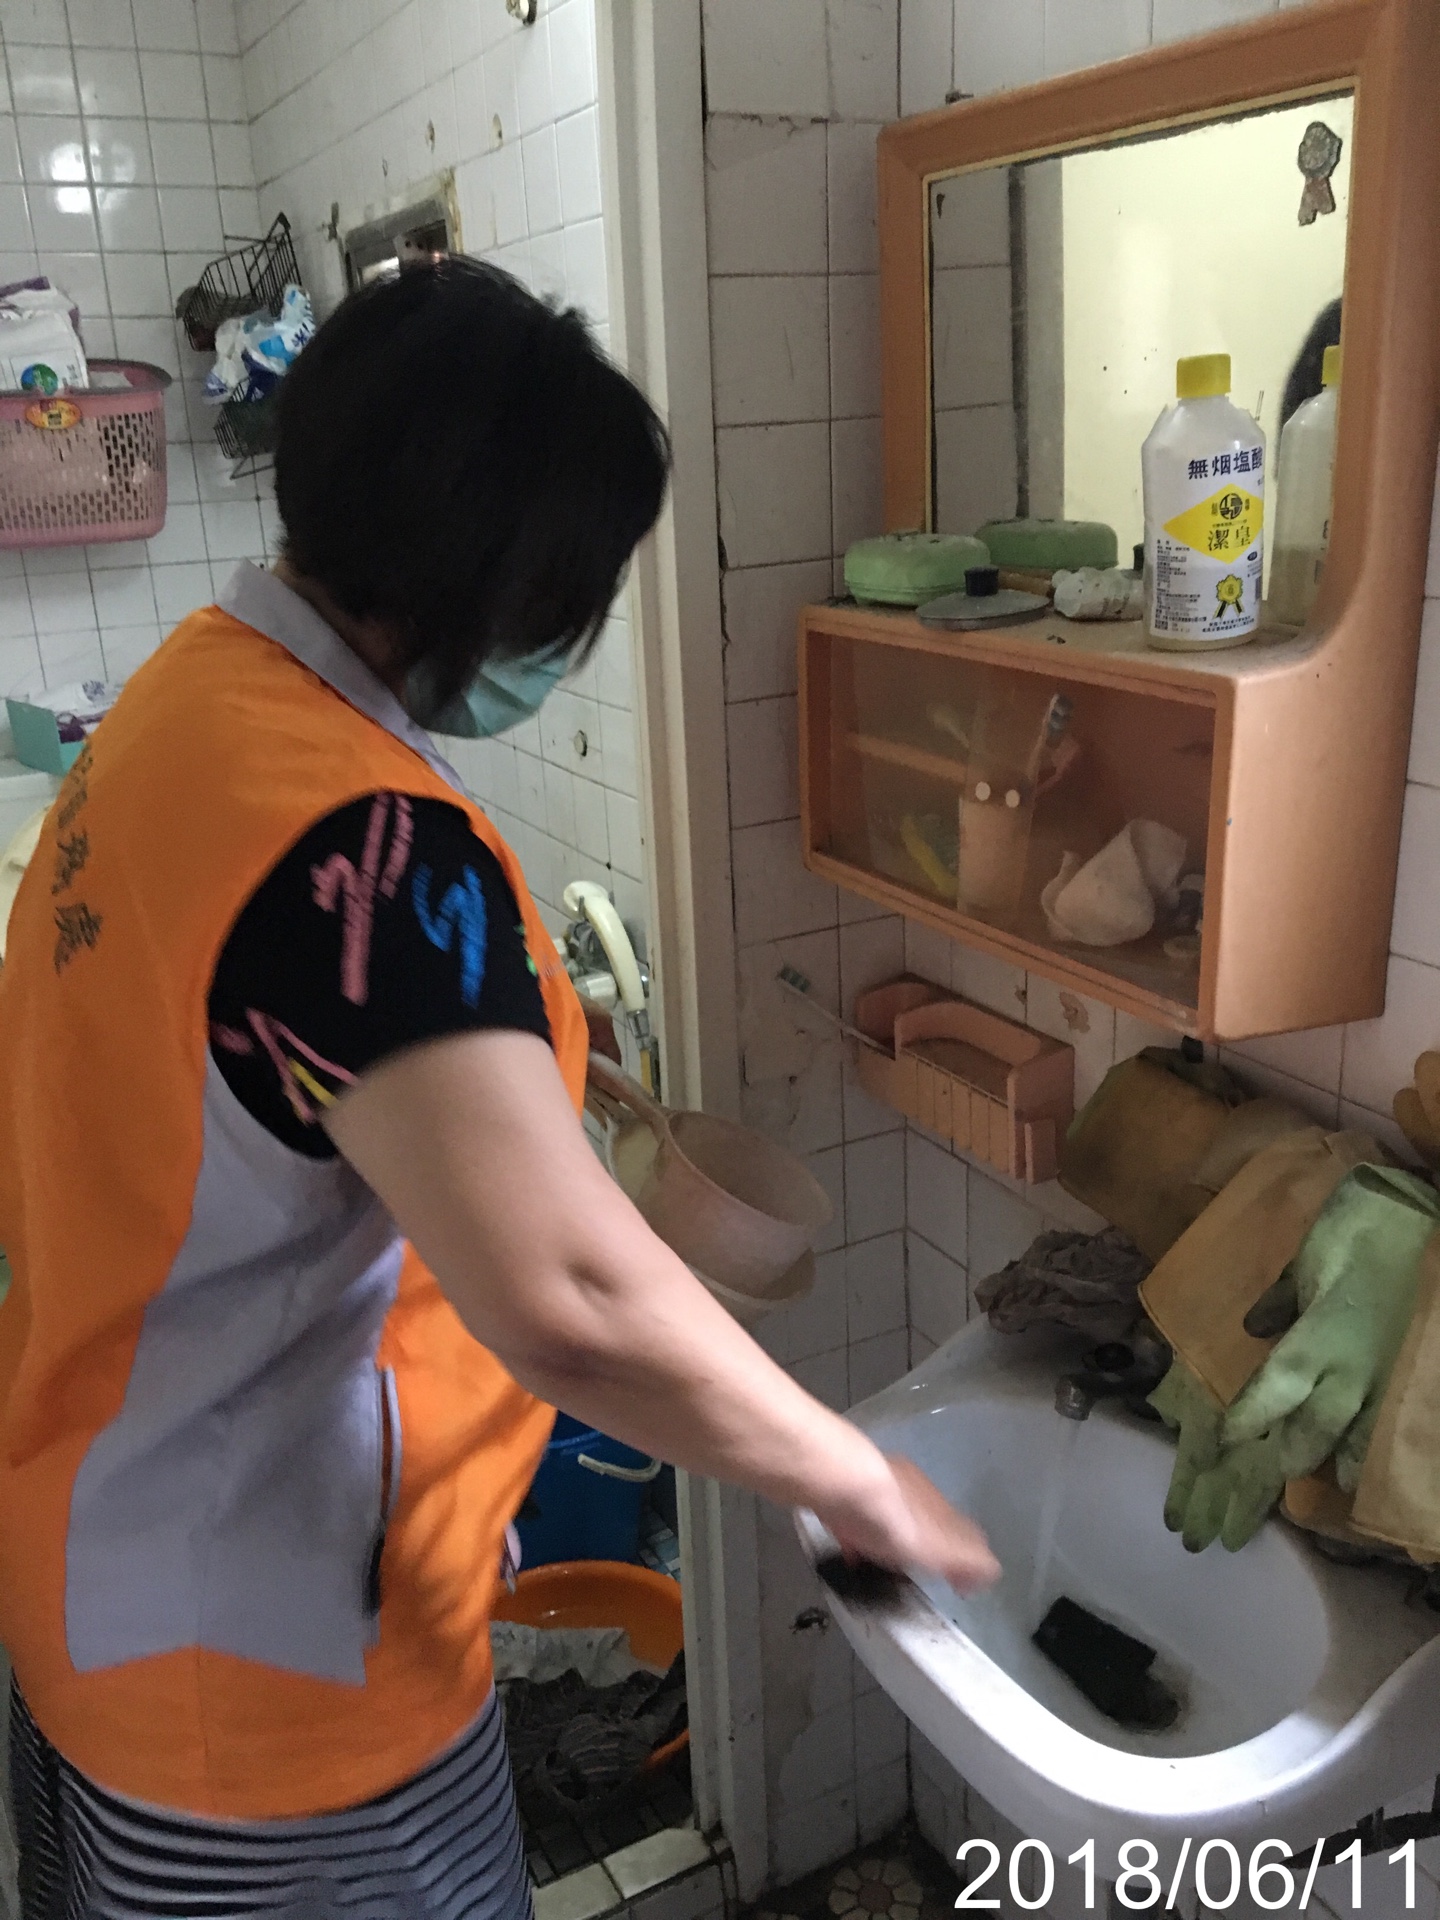 臺南市榮民服務處-10706協助單身獨居榮民環境打掃落實感動服務